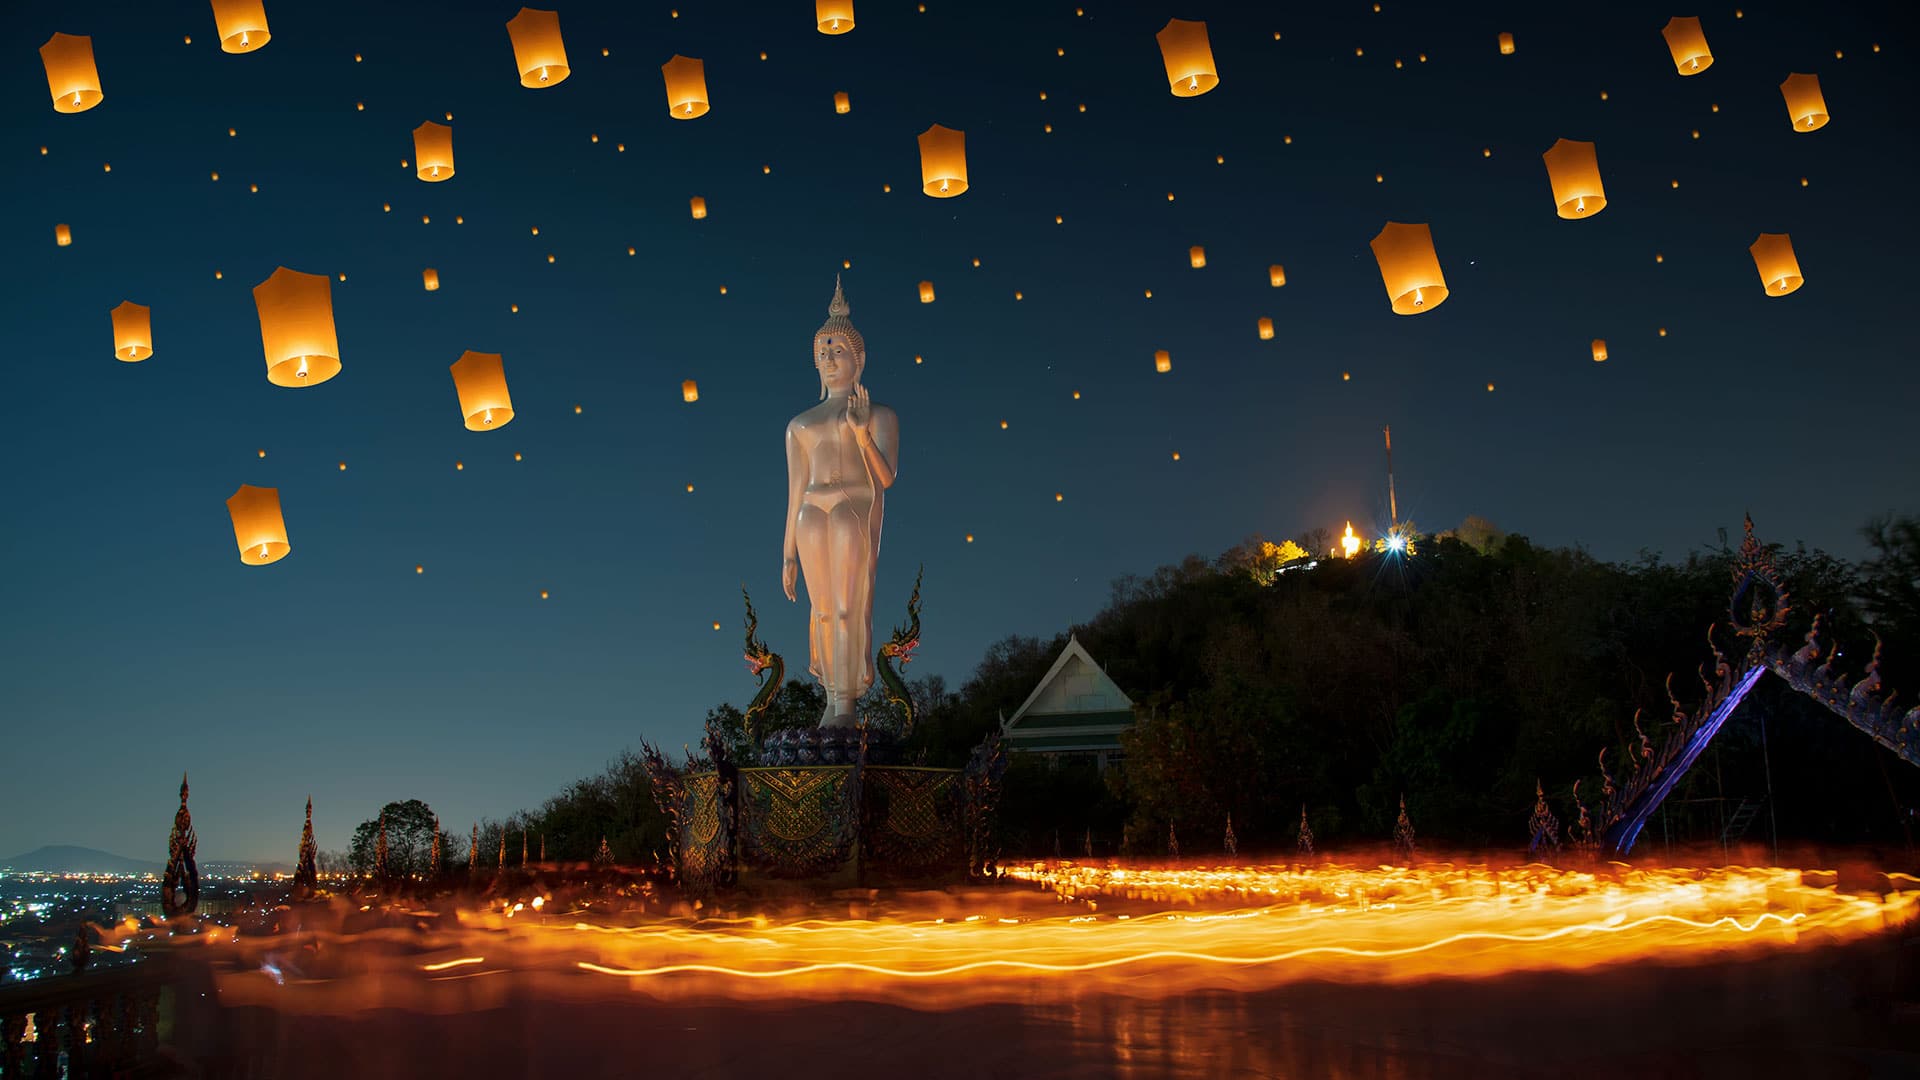 lanterns in night sky in thailand